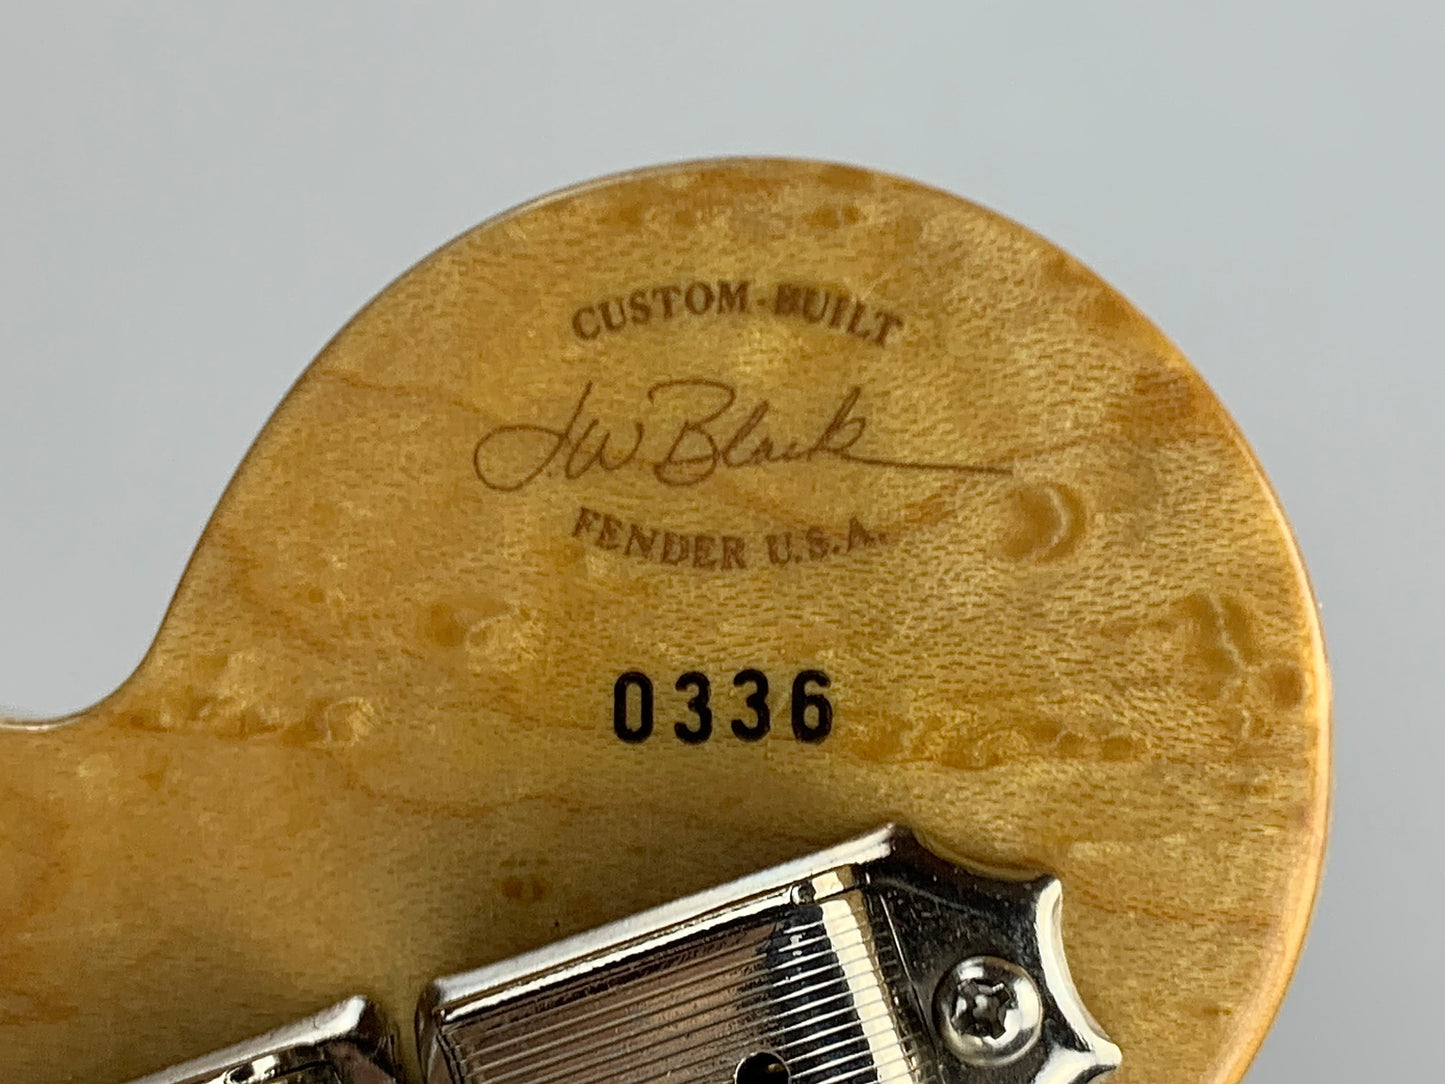 1992 Fender Custom Shop Masterbuilt Flametop Stratocaster | J.W. Black Sunburst Left-Handed strung Righty | One-of-a-Kind!